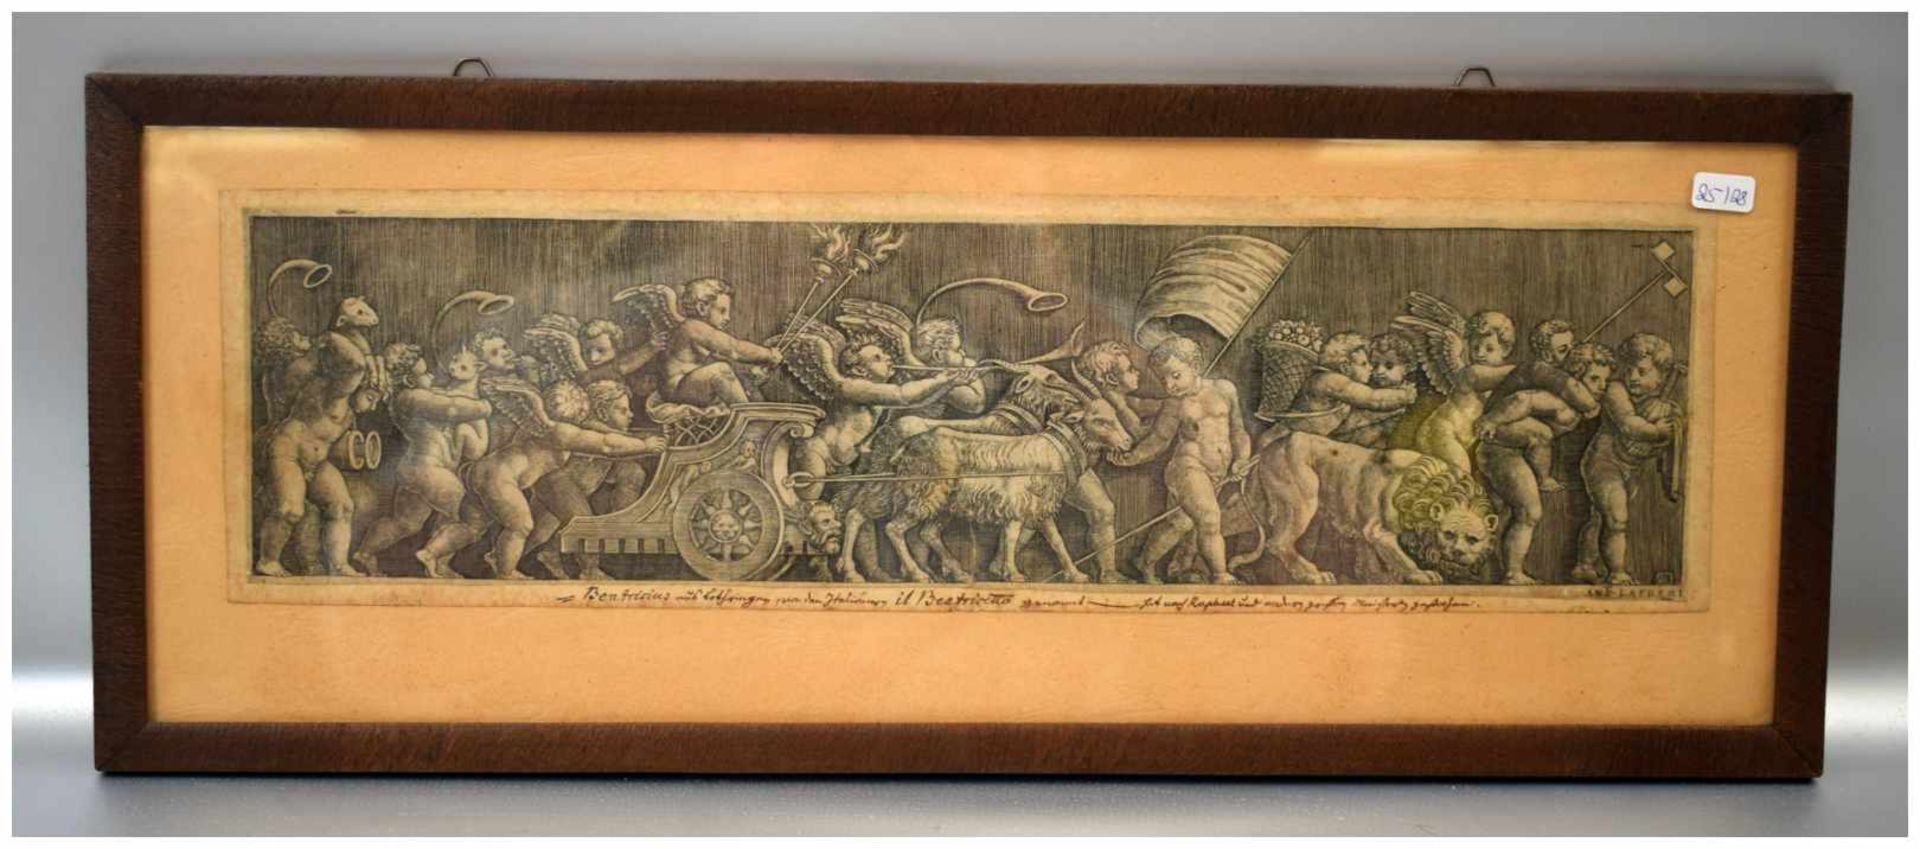 Kupferstich geflügelte Engel im Streitwagen, mit Fabelwesen, im Rahmen, 19 X 48 cm, 18. Jh.